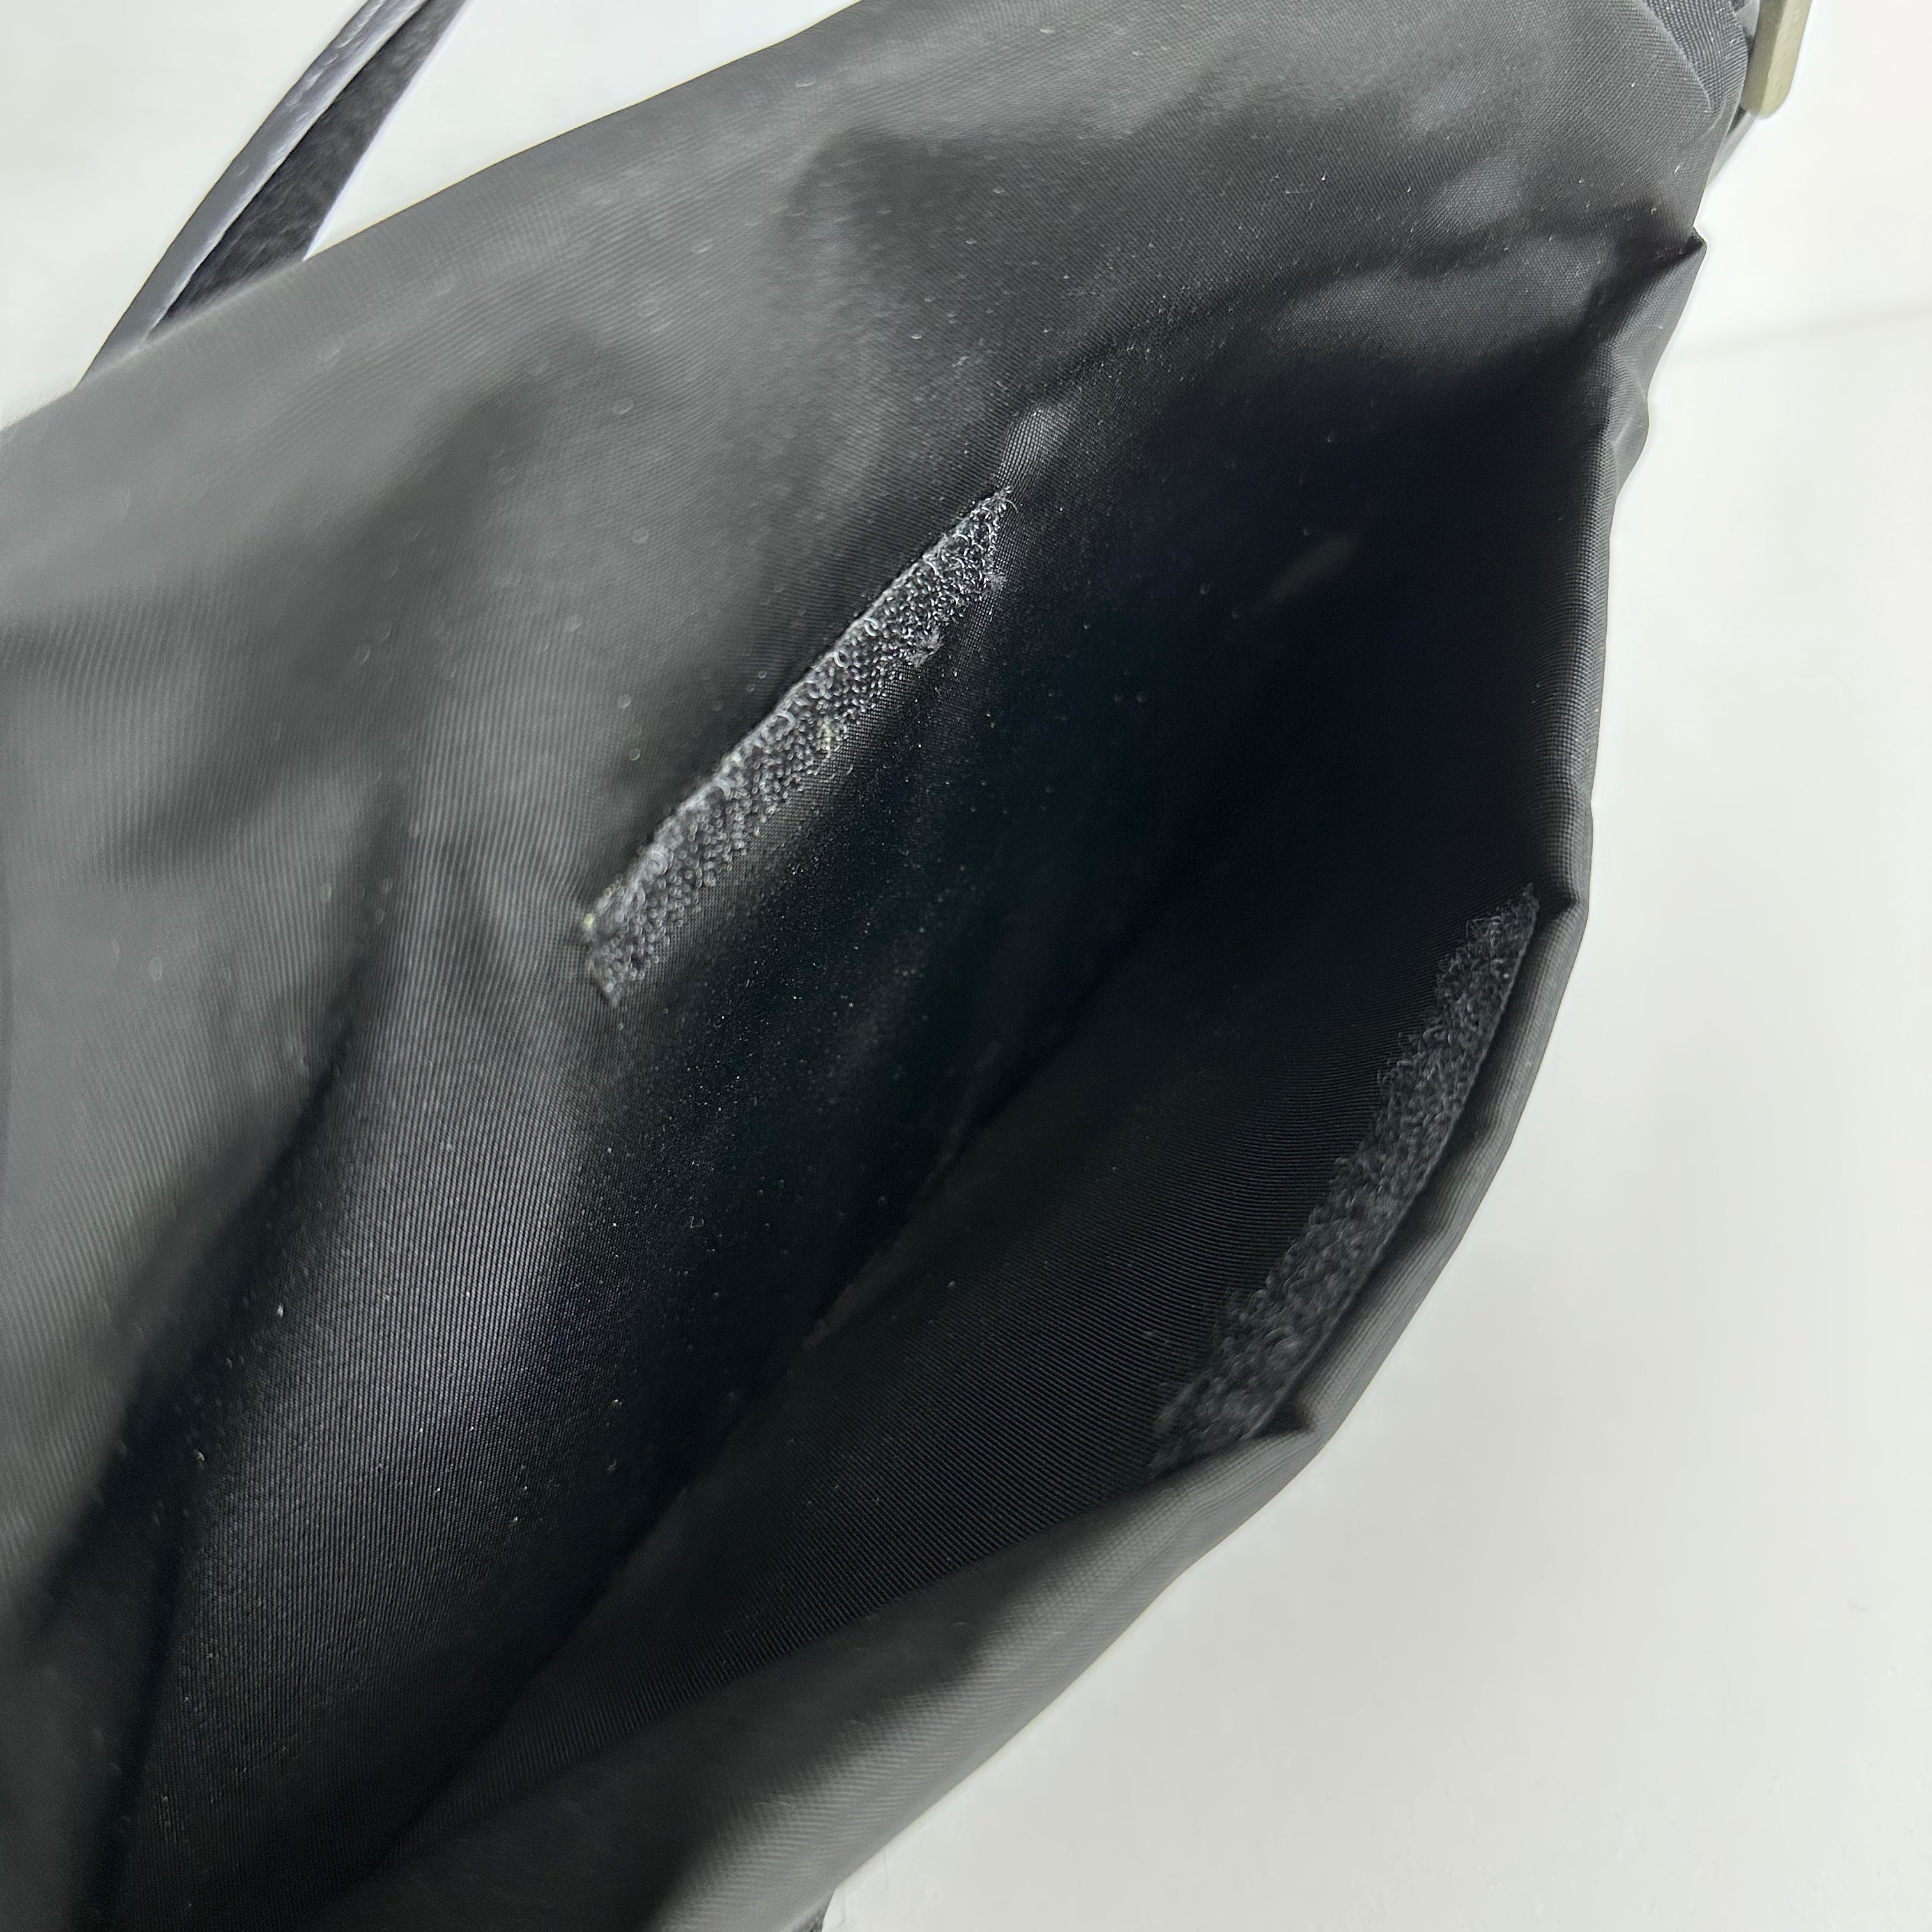 Nylon Tessuto Shoulder Bag